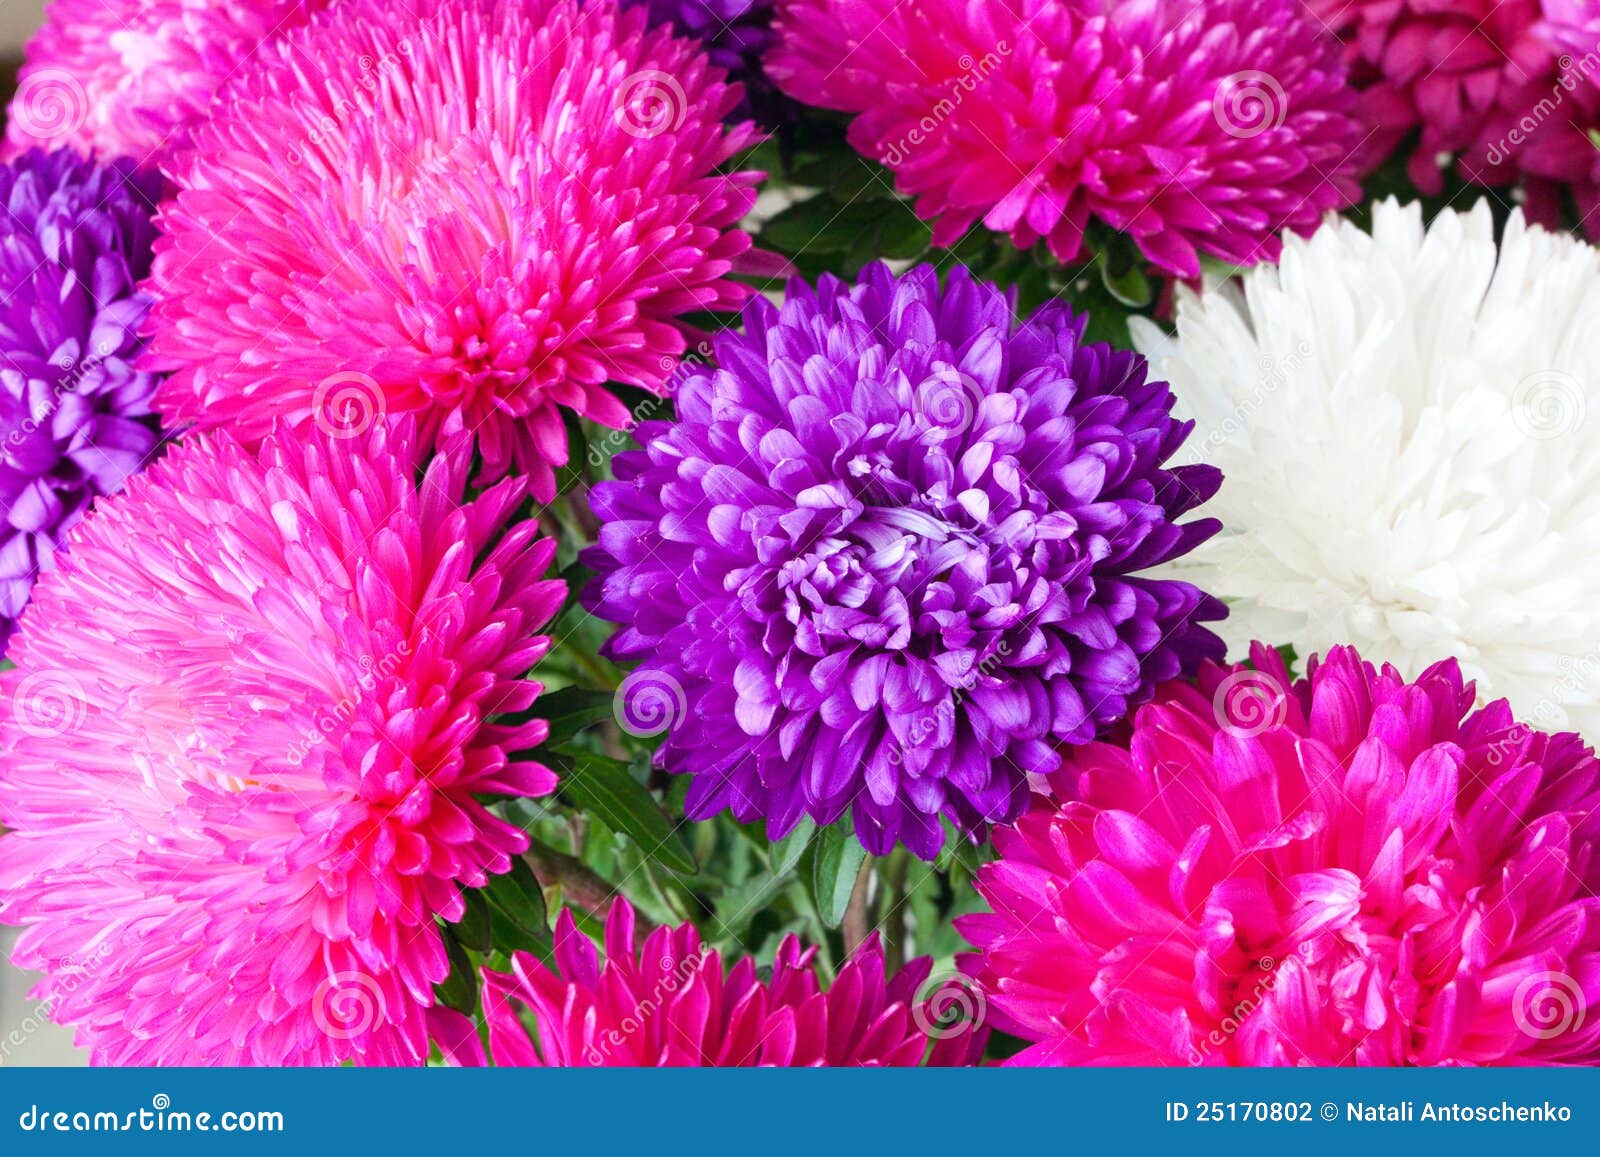 Flores del crisantemo foto de archivo. Imagen de modelo - 25170802